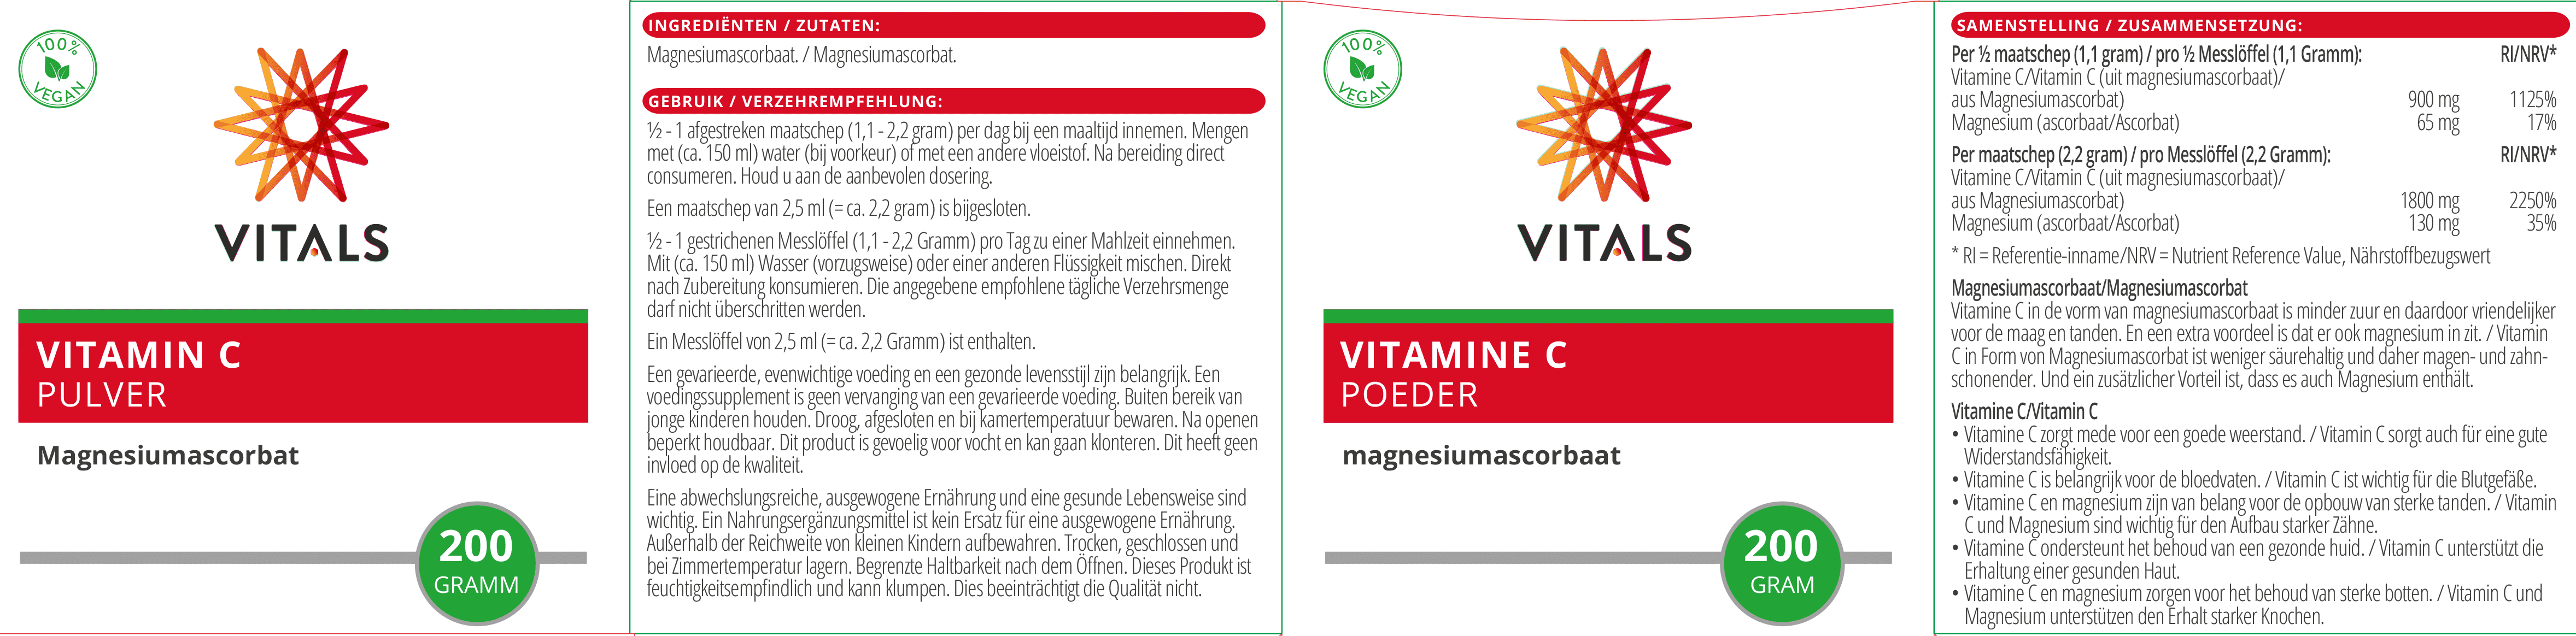 Vitamin C Pulver (Magnesiumascorbat)